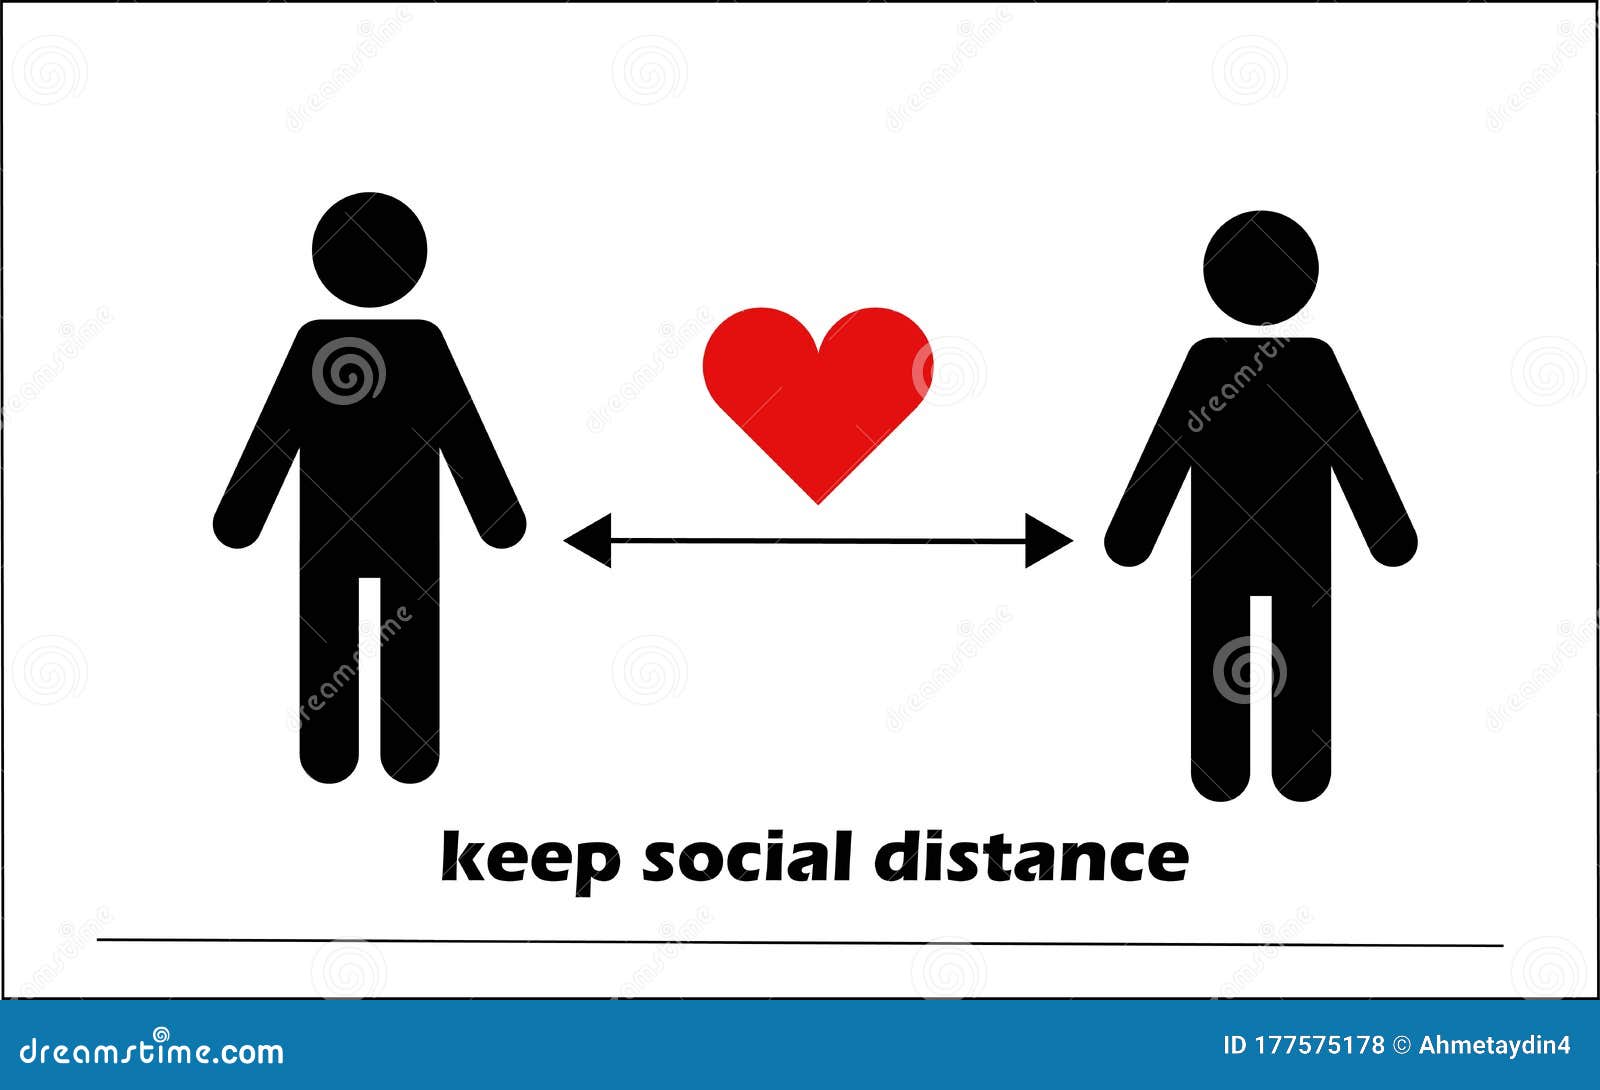 keep social distance. coronavirus covid-19 pandemic stayhome